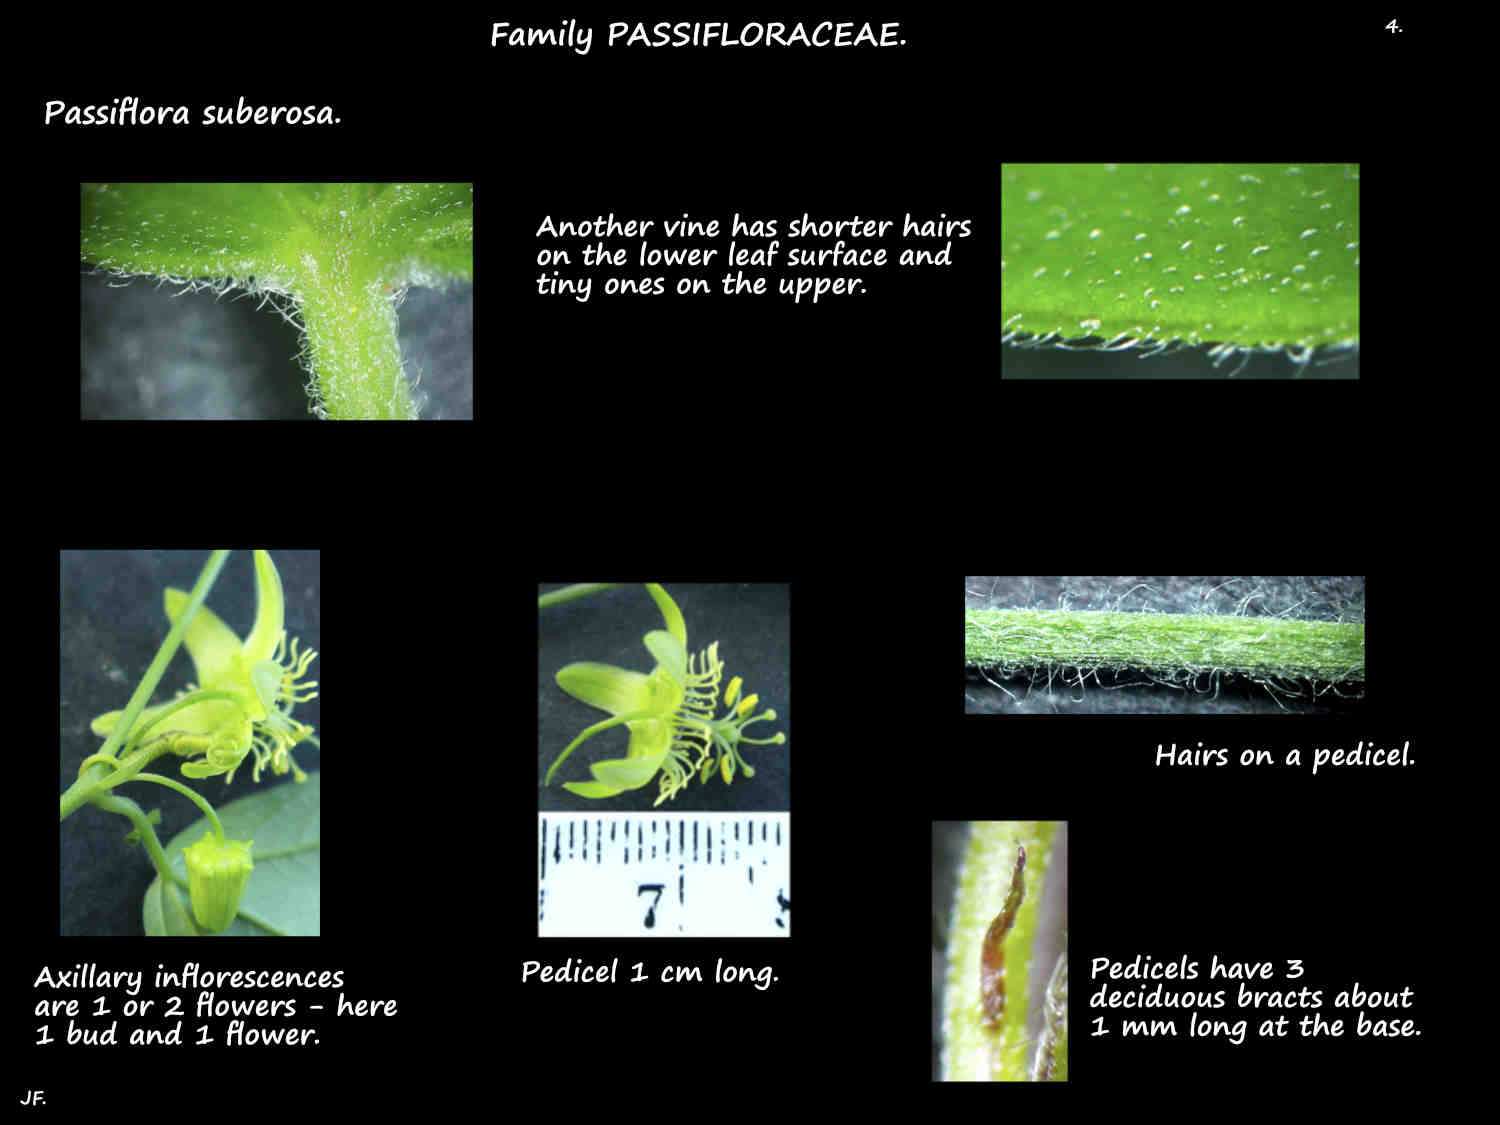 4 Passiflora suberosa inflorescences